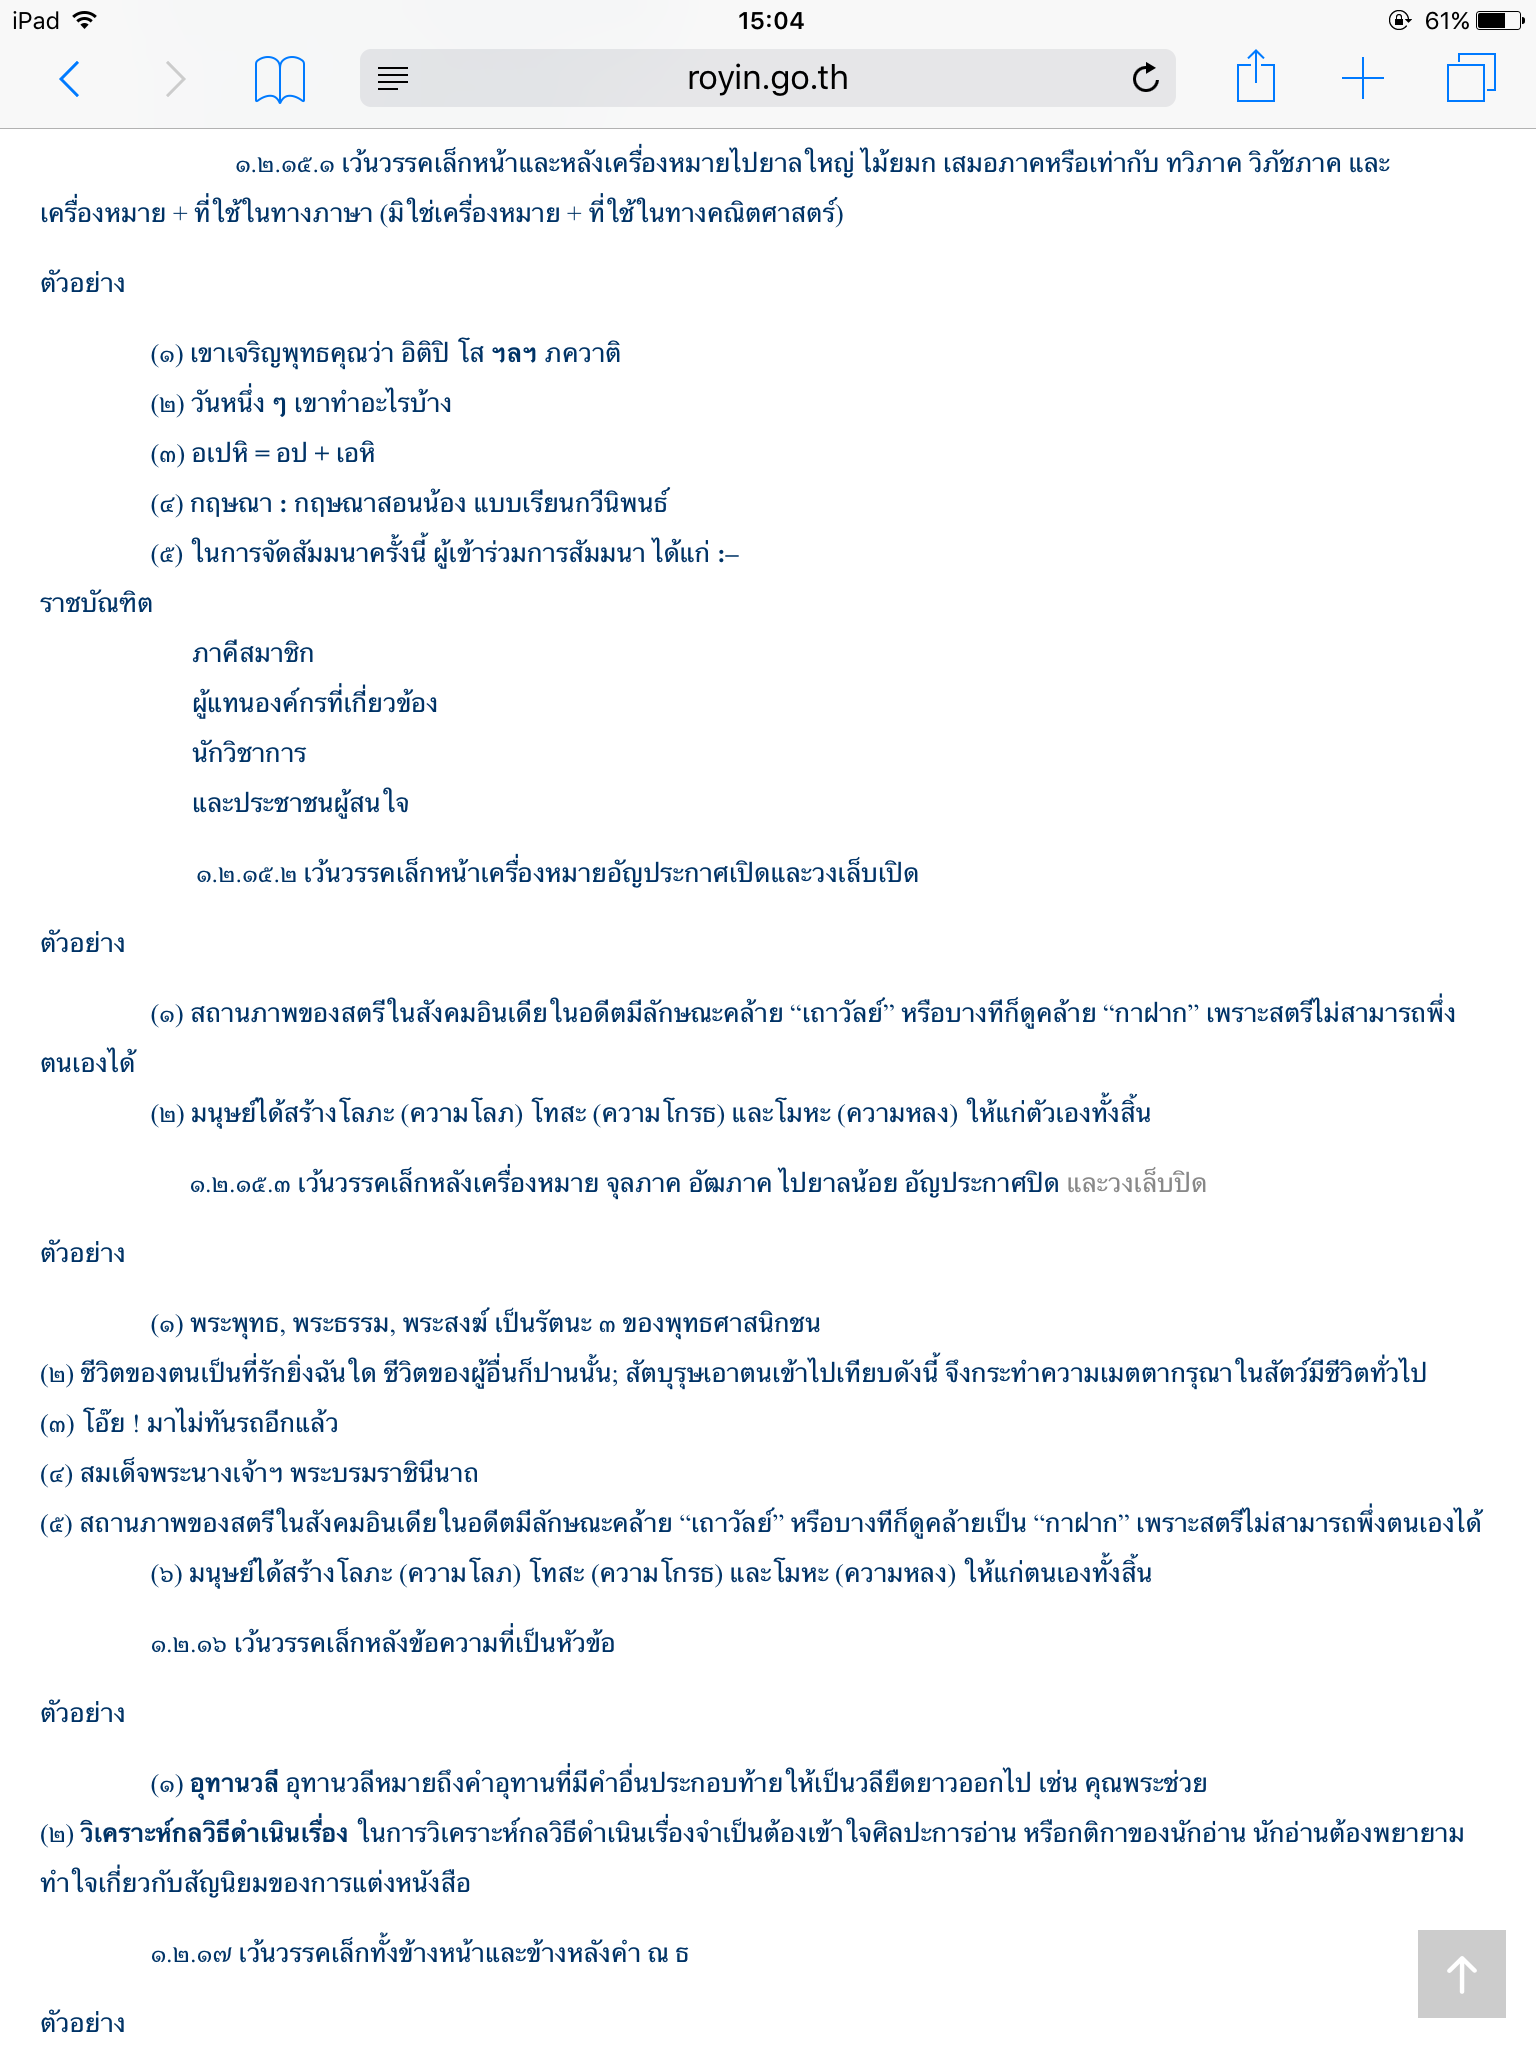 ทำไมต้องส่ง Email คุยกันเป็นภาษาอังกฤษคะ ทั้งๆที่เป็นคนไทยเหมือนกัน - Pantip